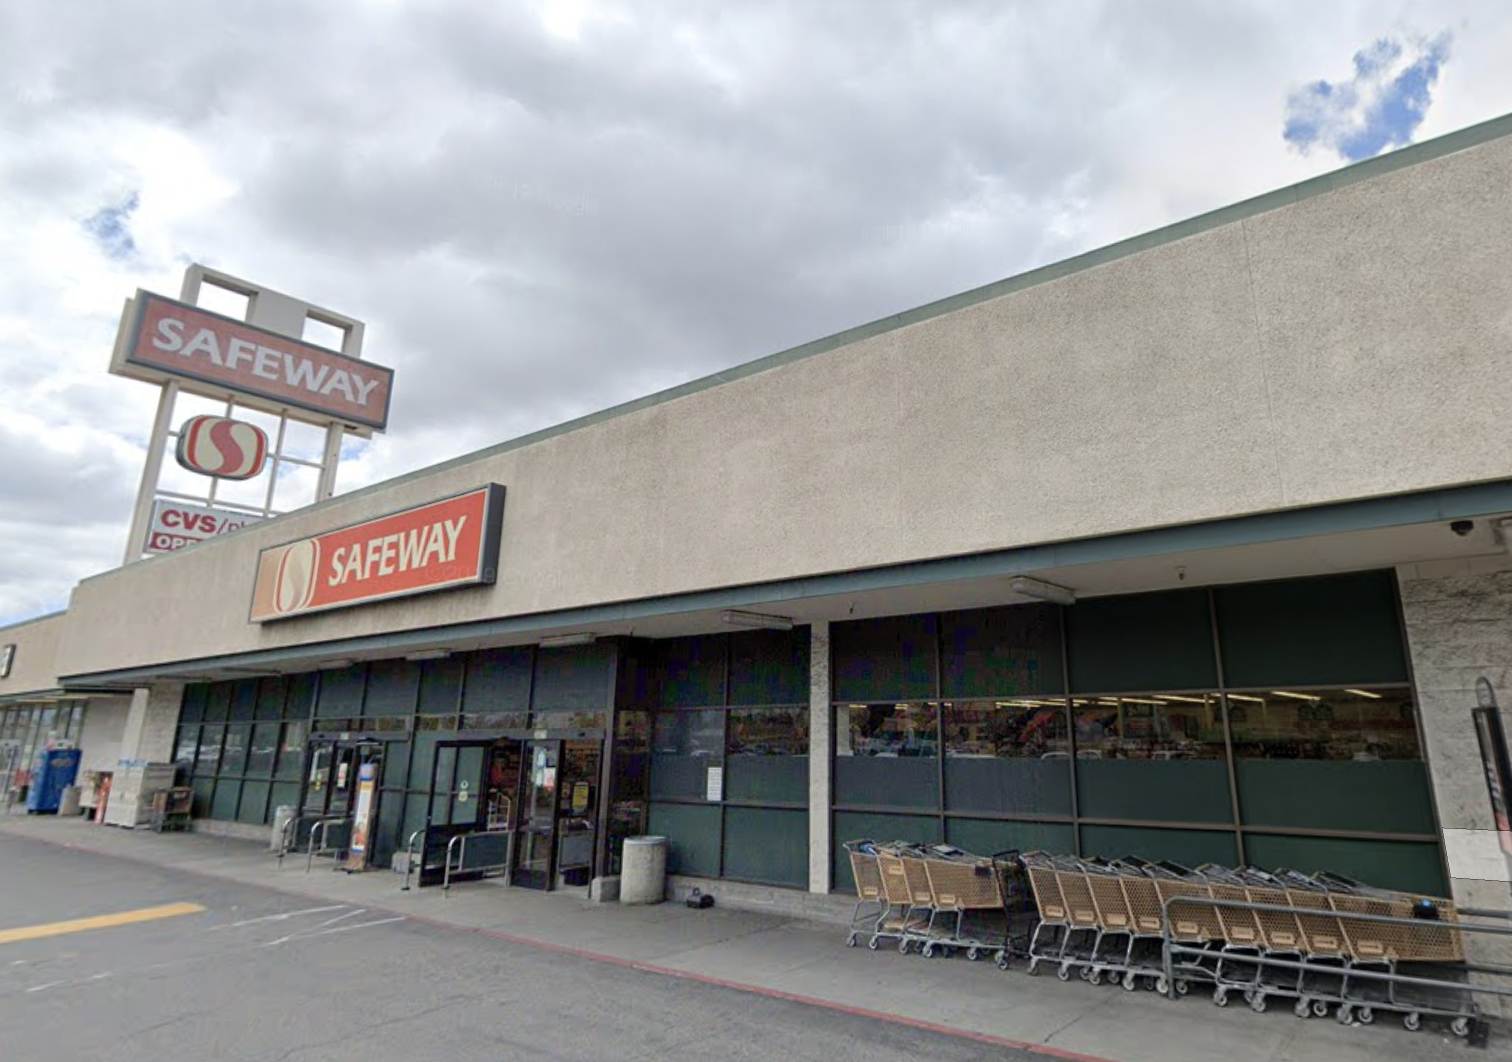 旧金山湾区的一家Safeway超市将在六十多年后关闭